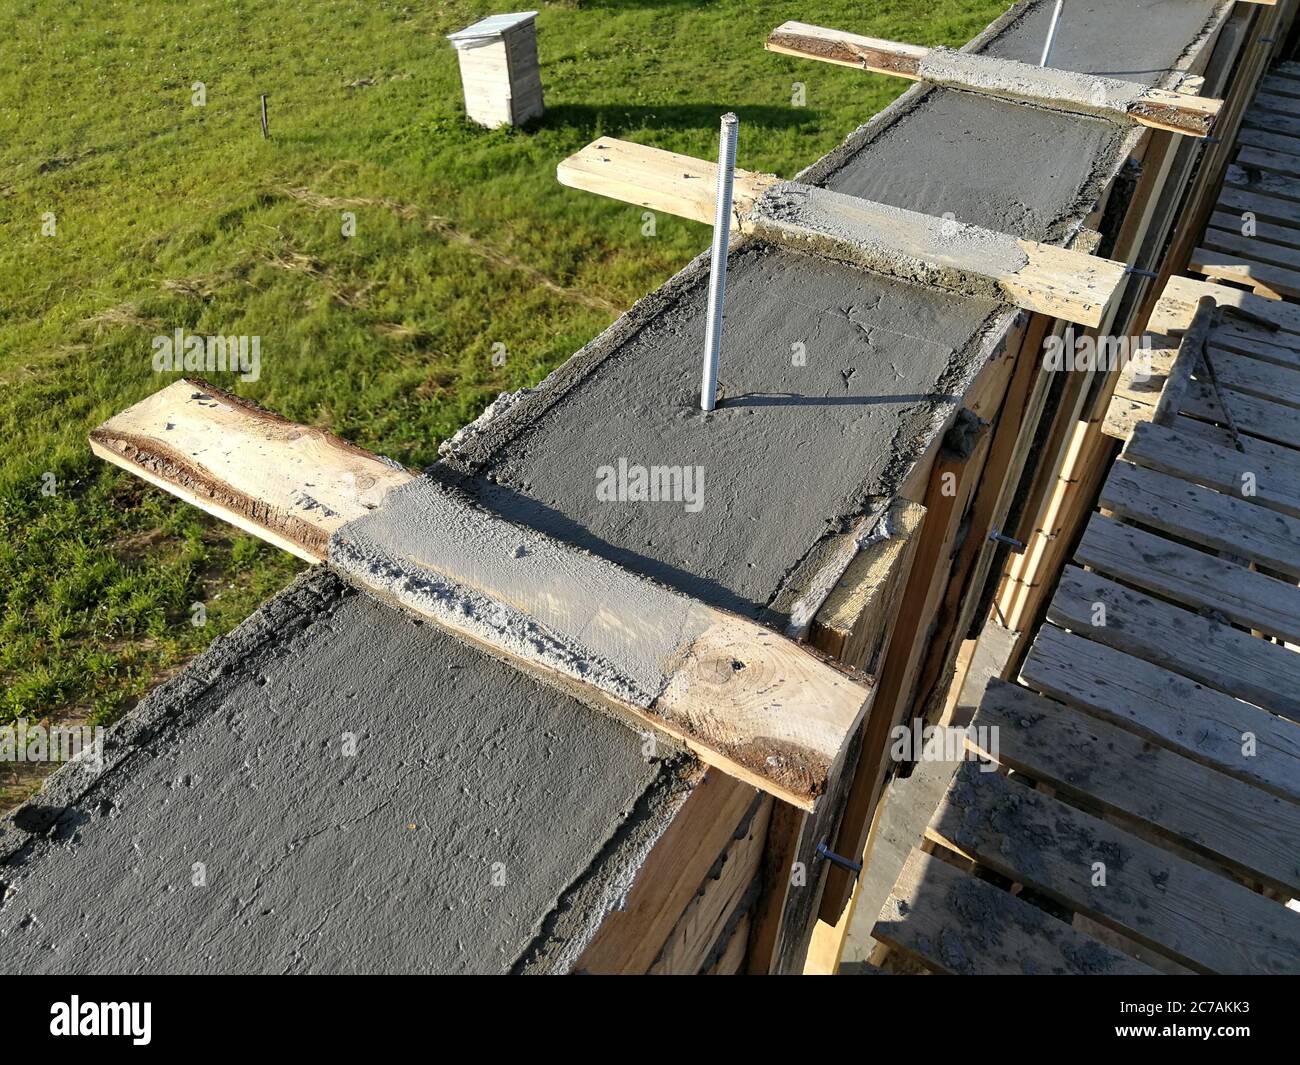 Viti metalliche inserite nel calcestruzzo bagnato per il fissaggio del tetto di una singola casa Foto Stock